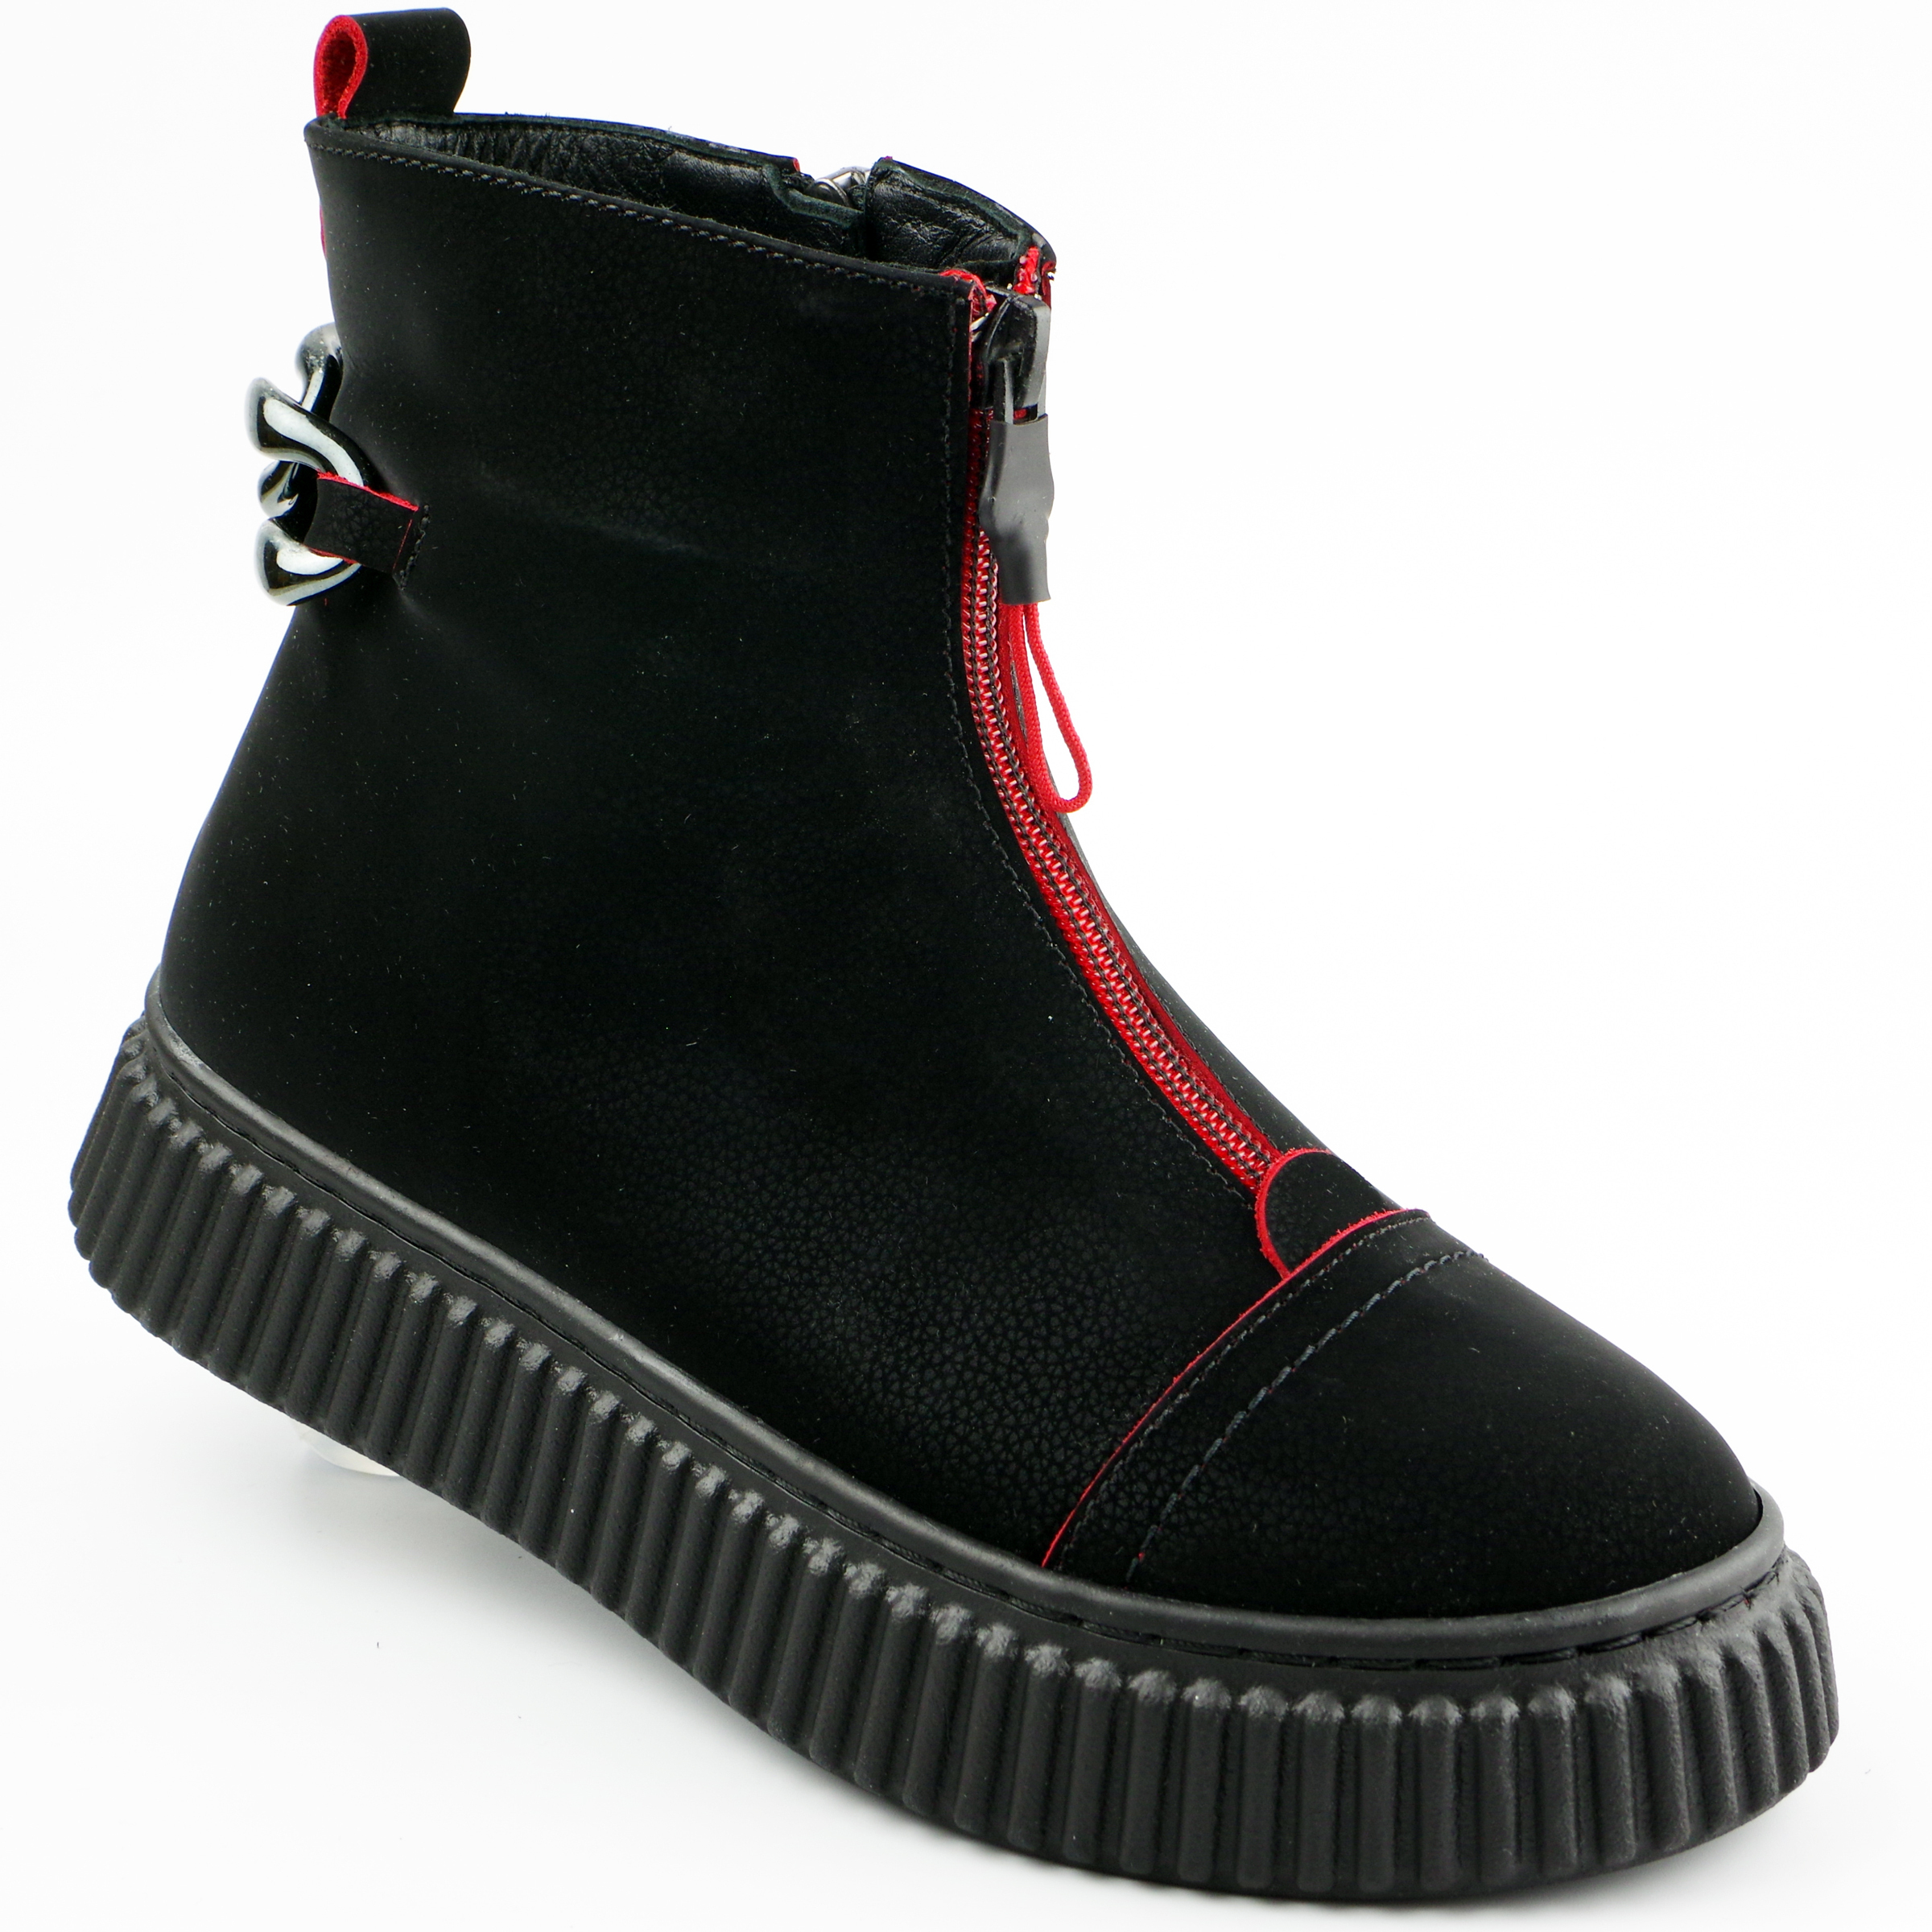 Демисезонные ботинки (2133) материал Нубук, цвет Черный  для девочки 31-36 размеры – Sole Kids. Фото 1